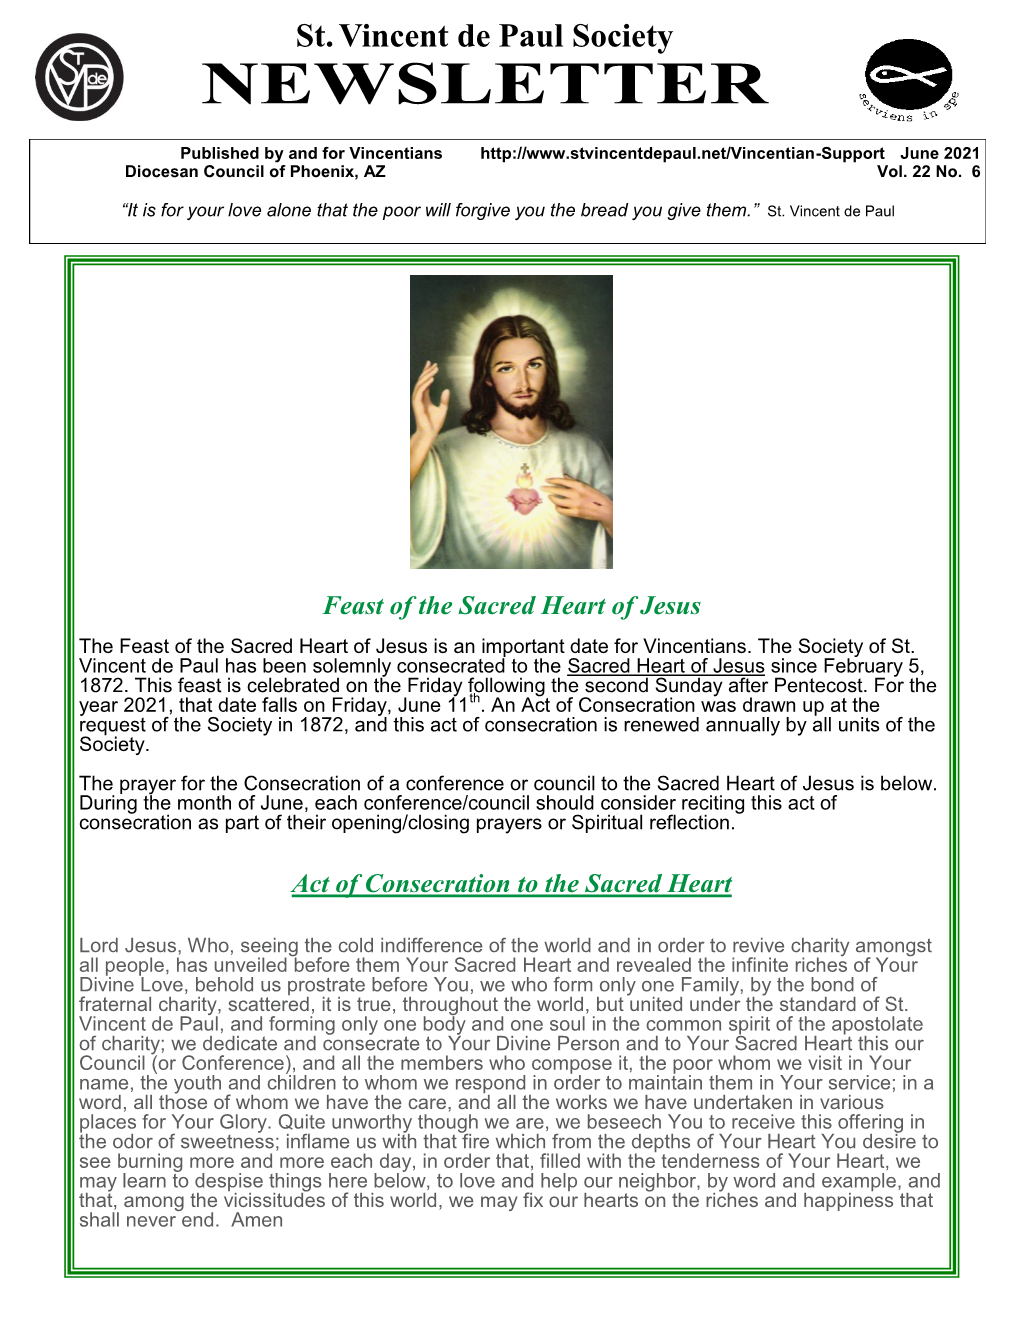 June 2021 Diocesan Council of Phoenix, AZ Vol